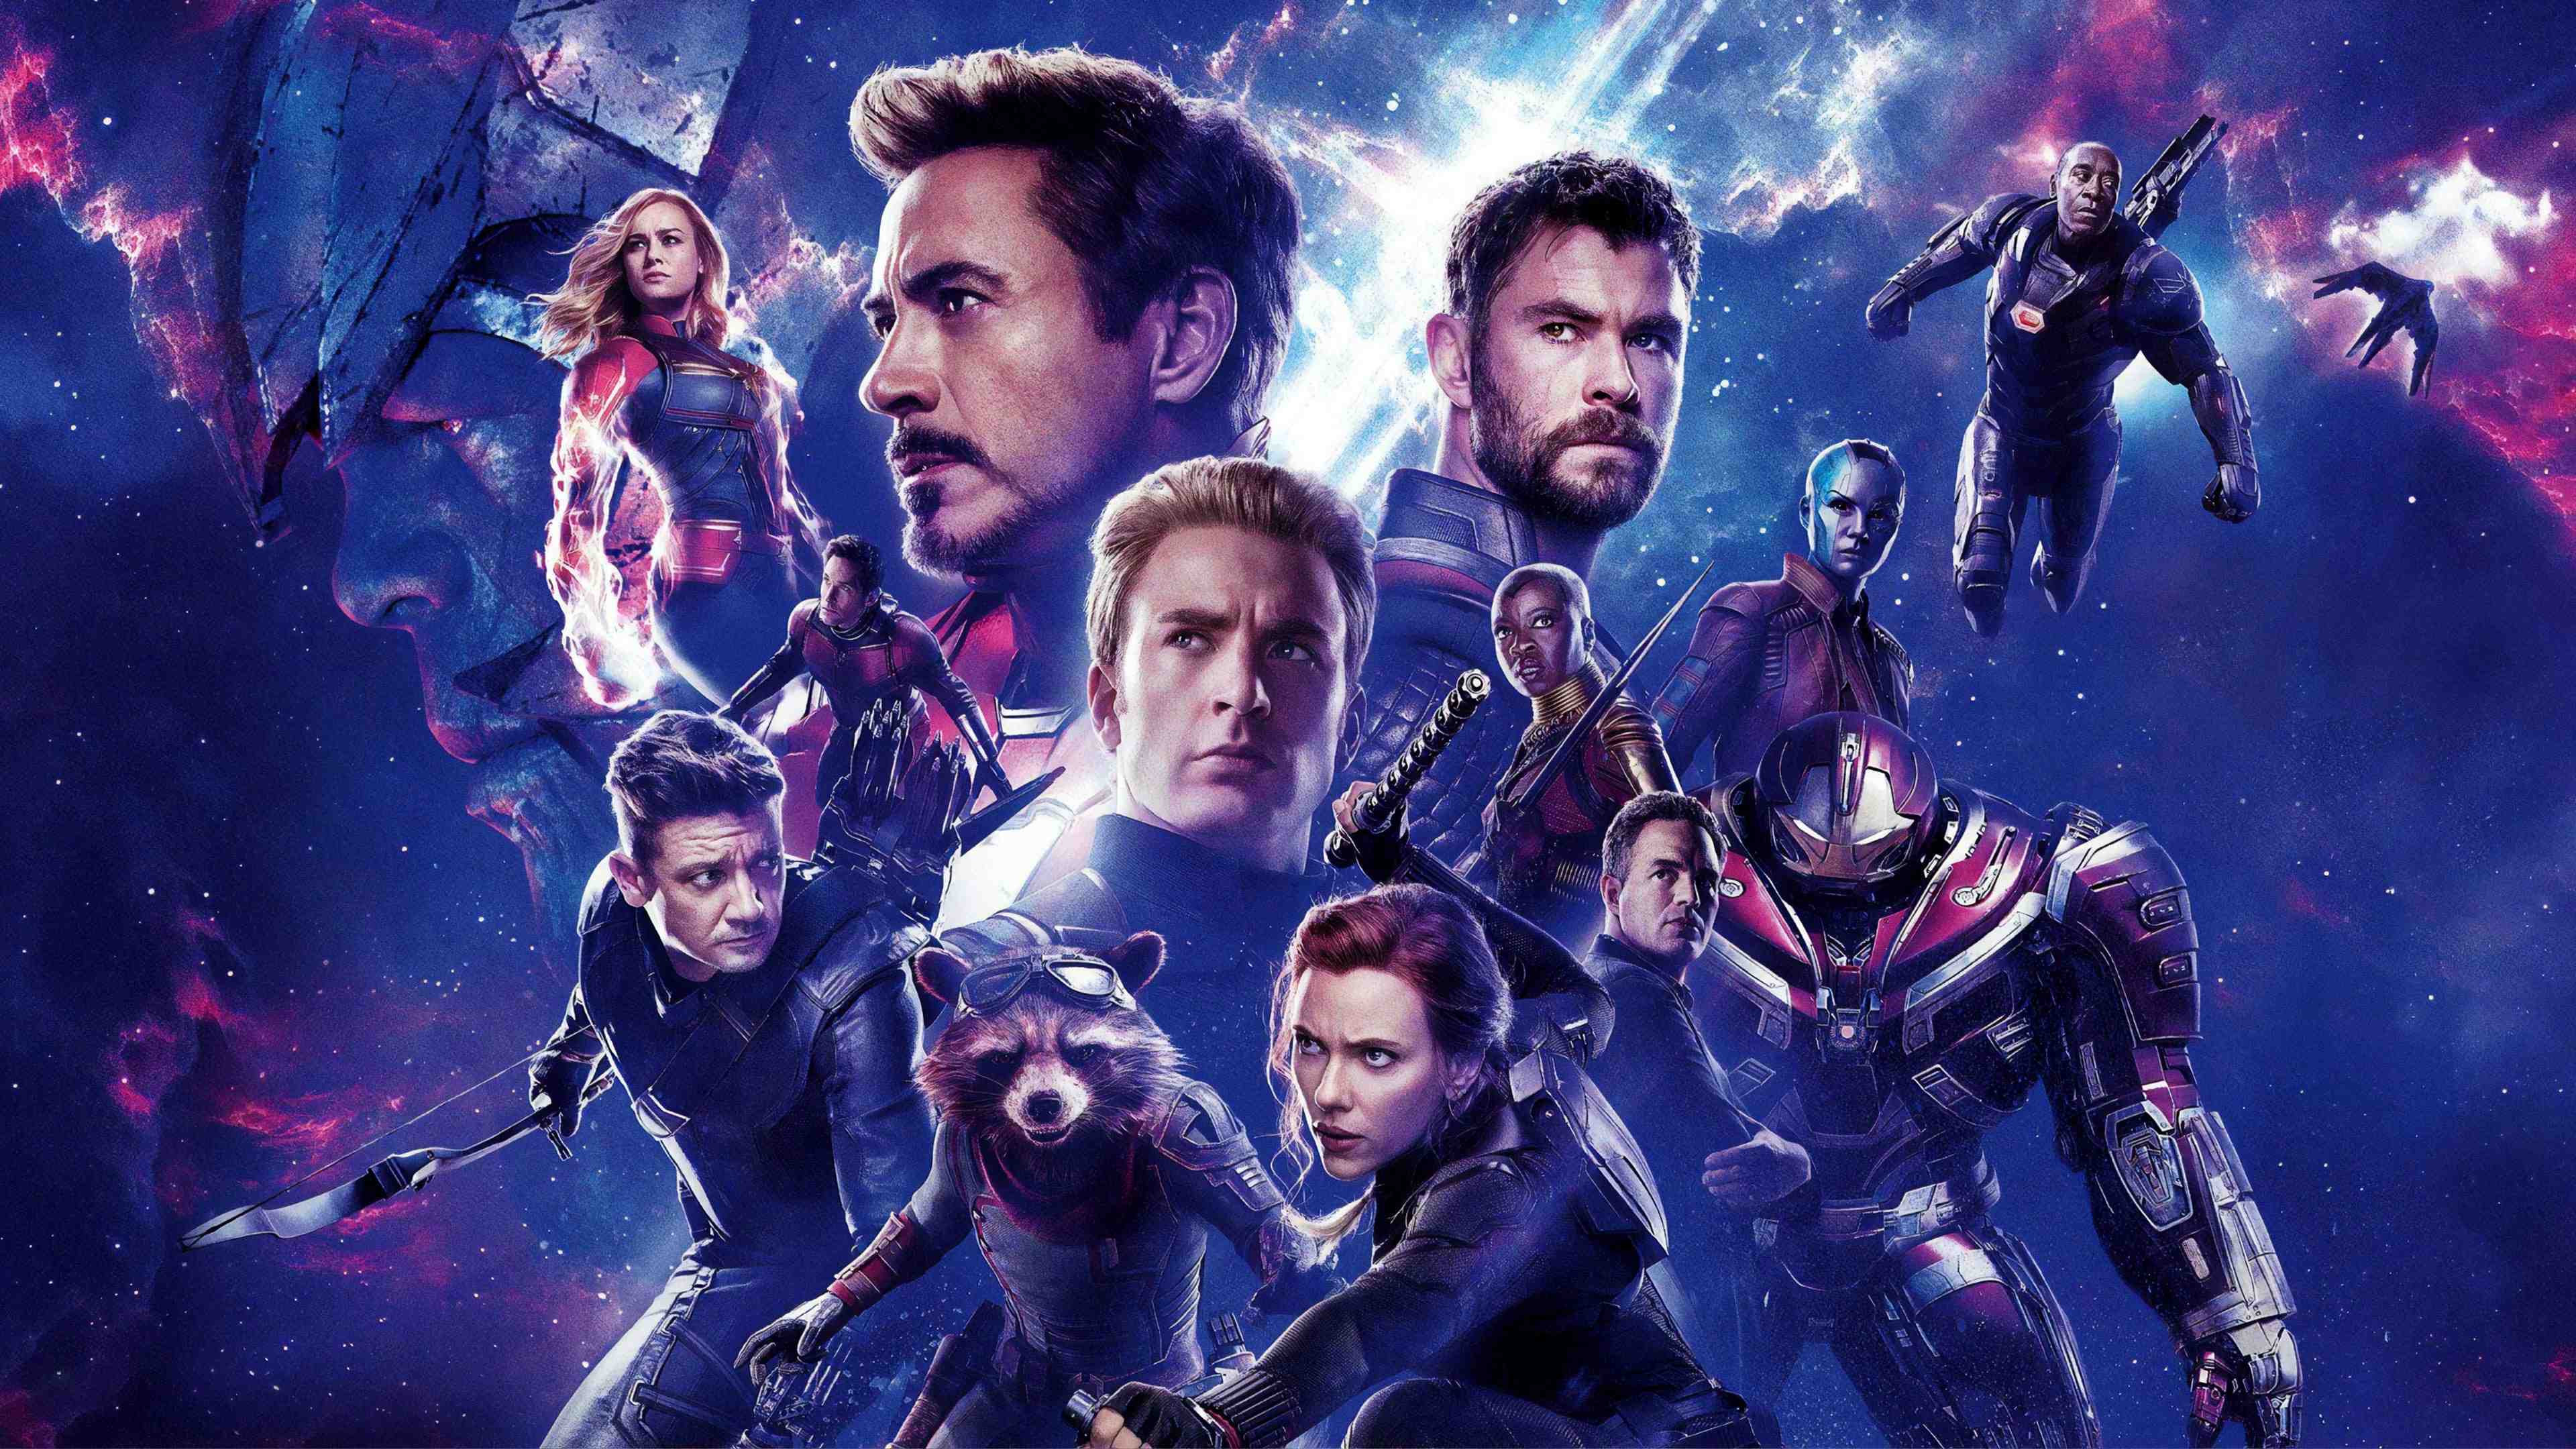 Avengers Endgame Wallpaper 4K. Avengers 4 Image 2019